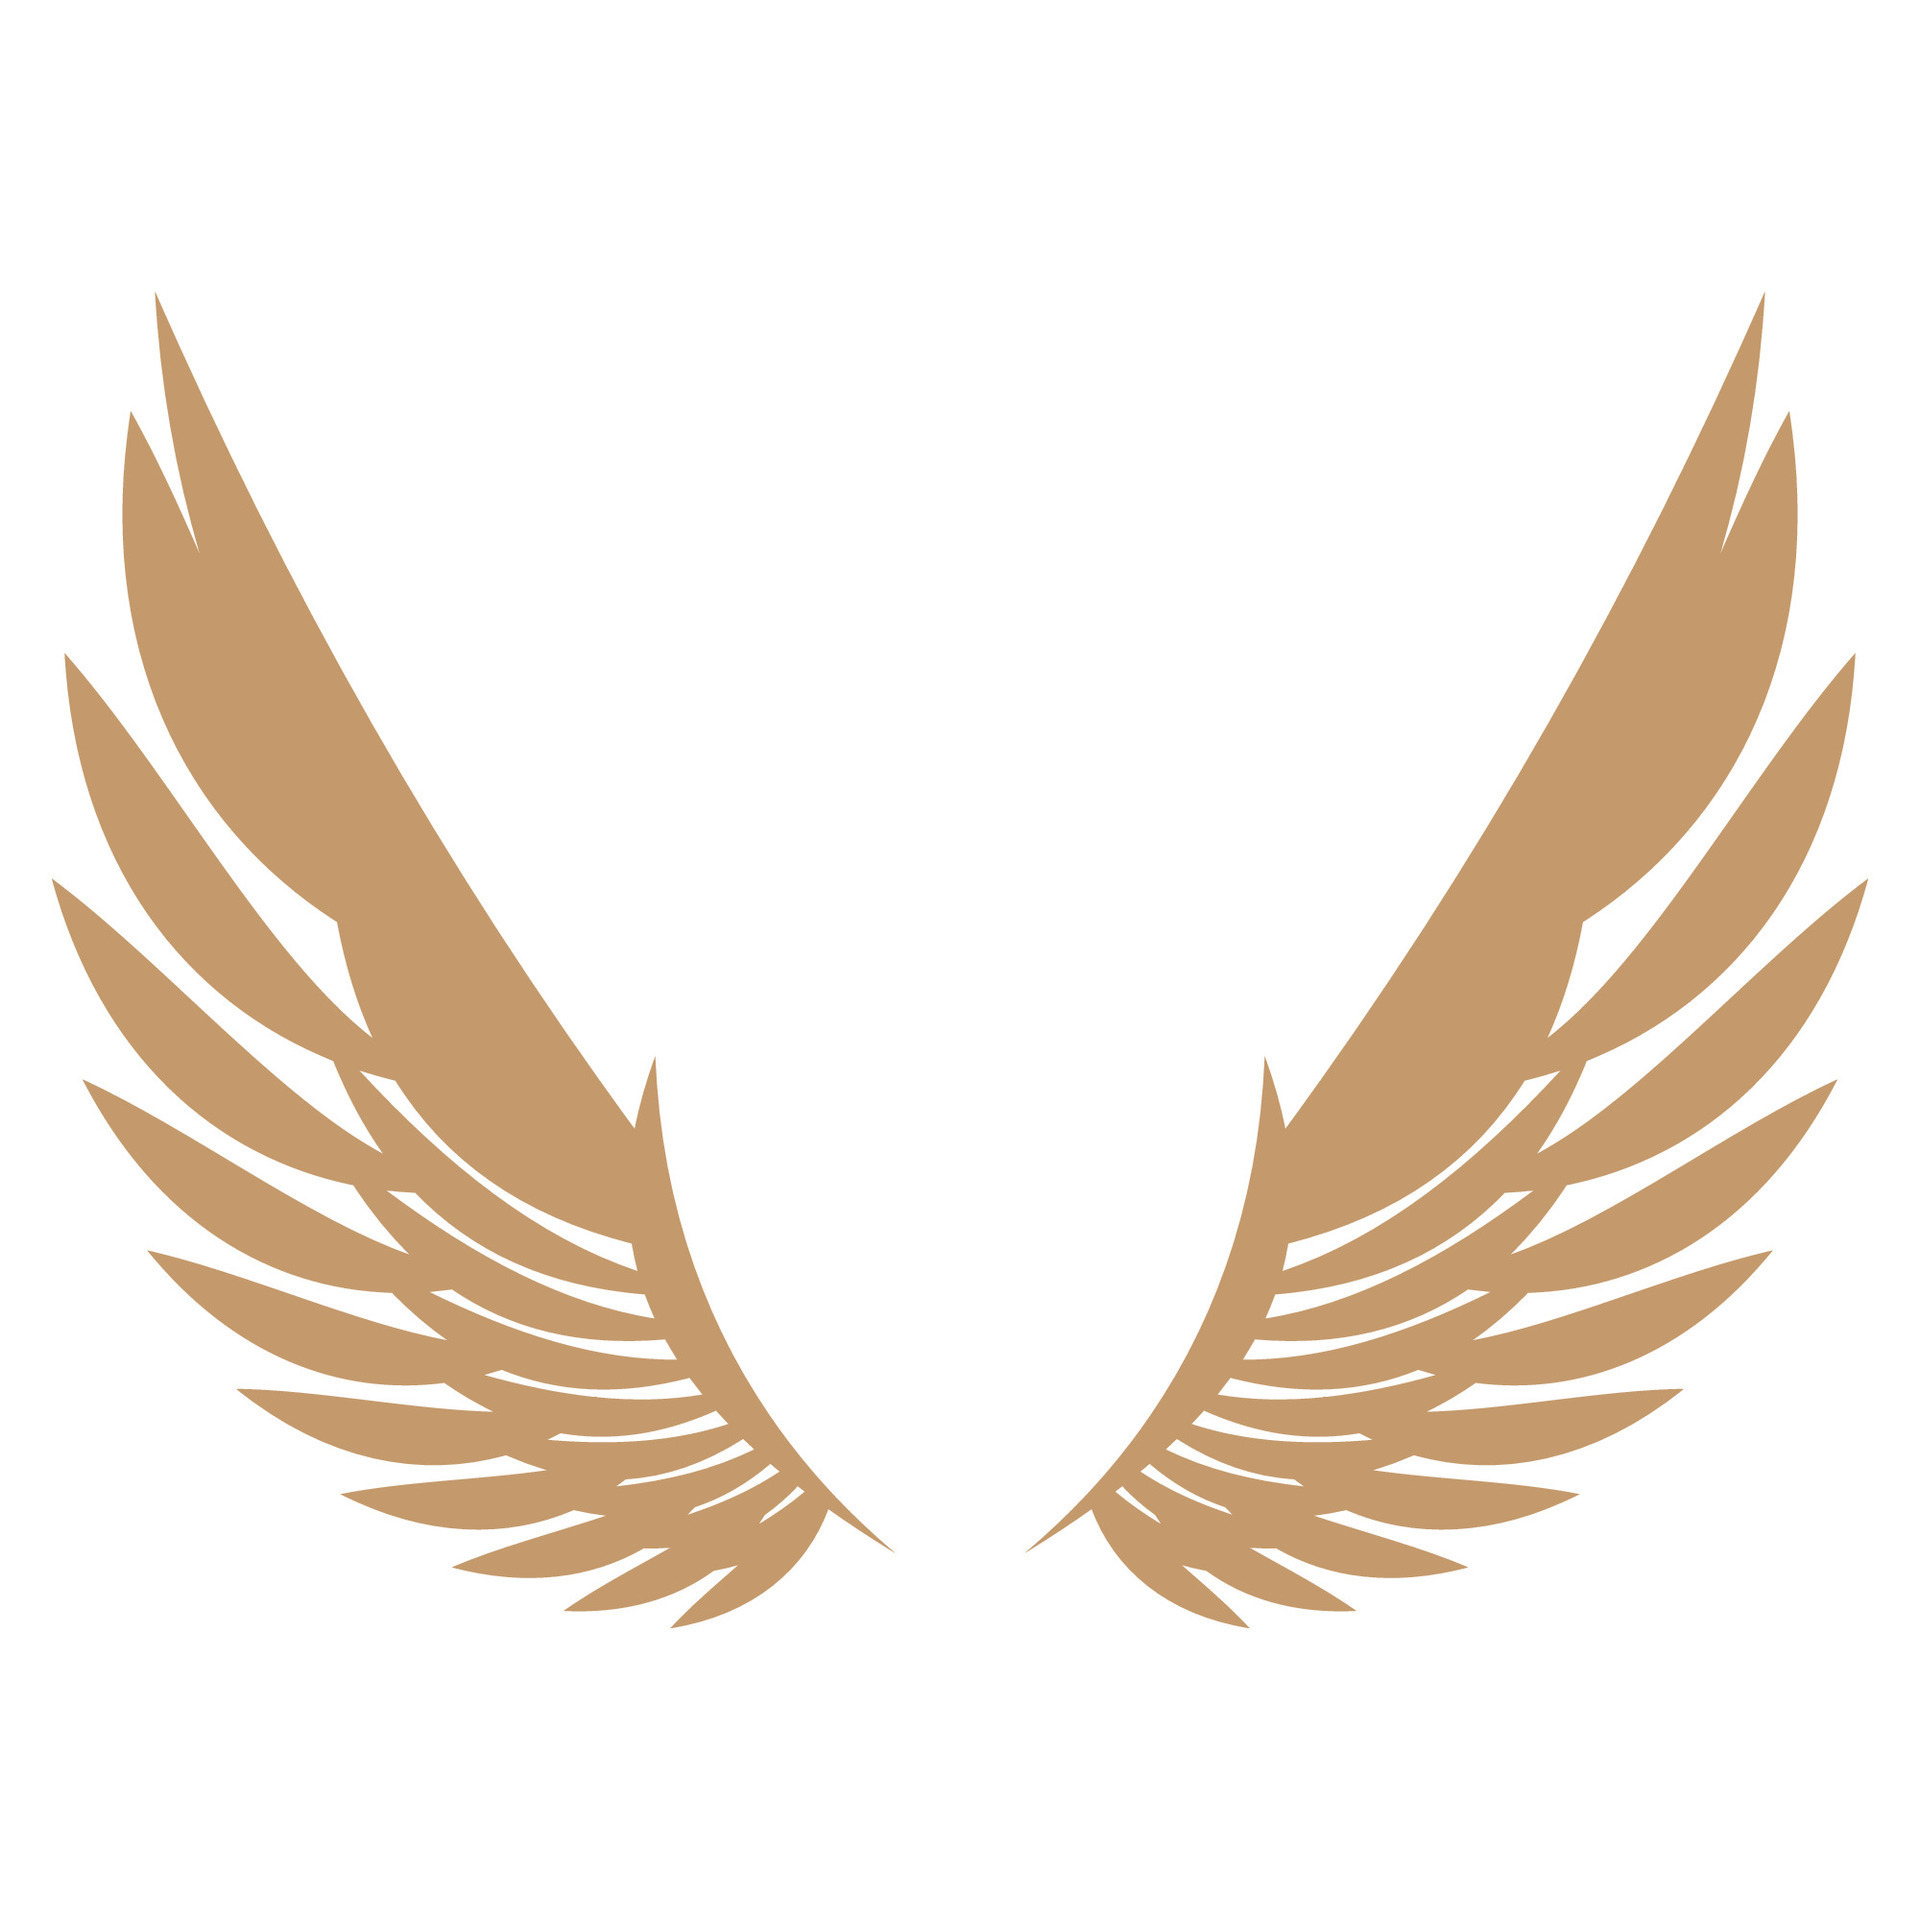 Bird wings illustration logo. 26556678 Vector Art at Vecteezy